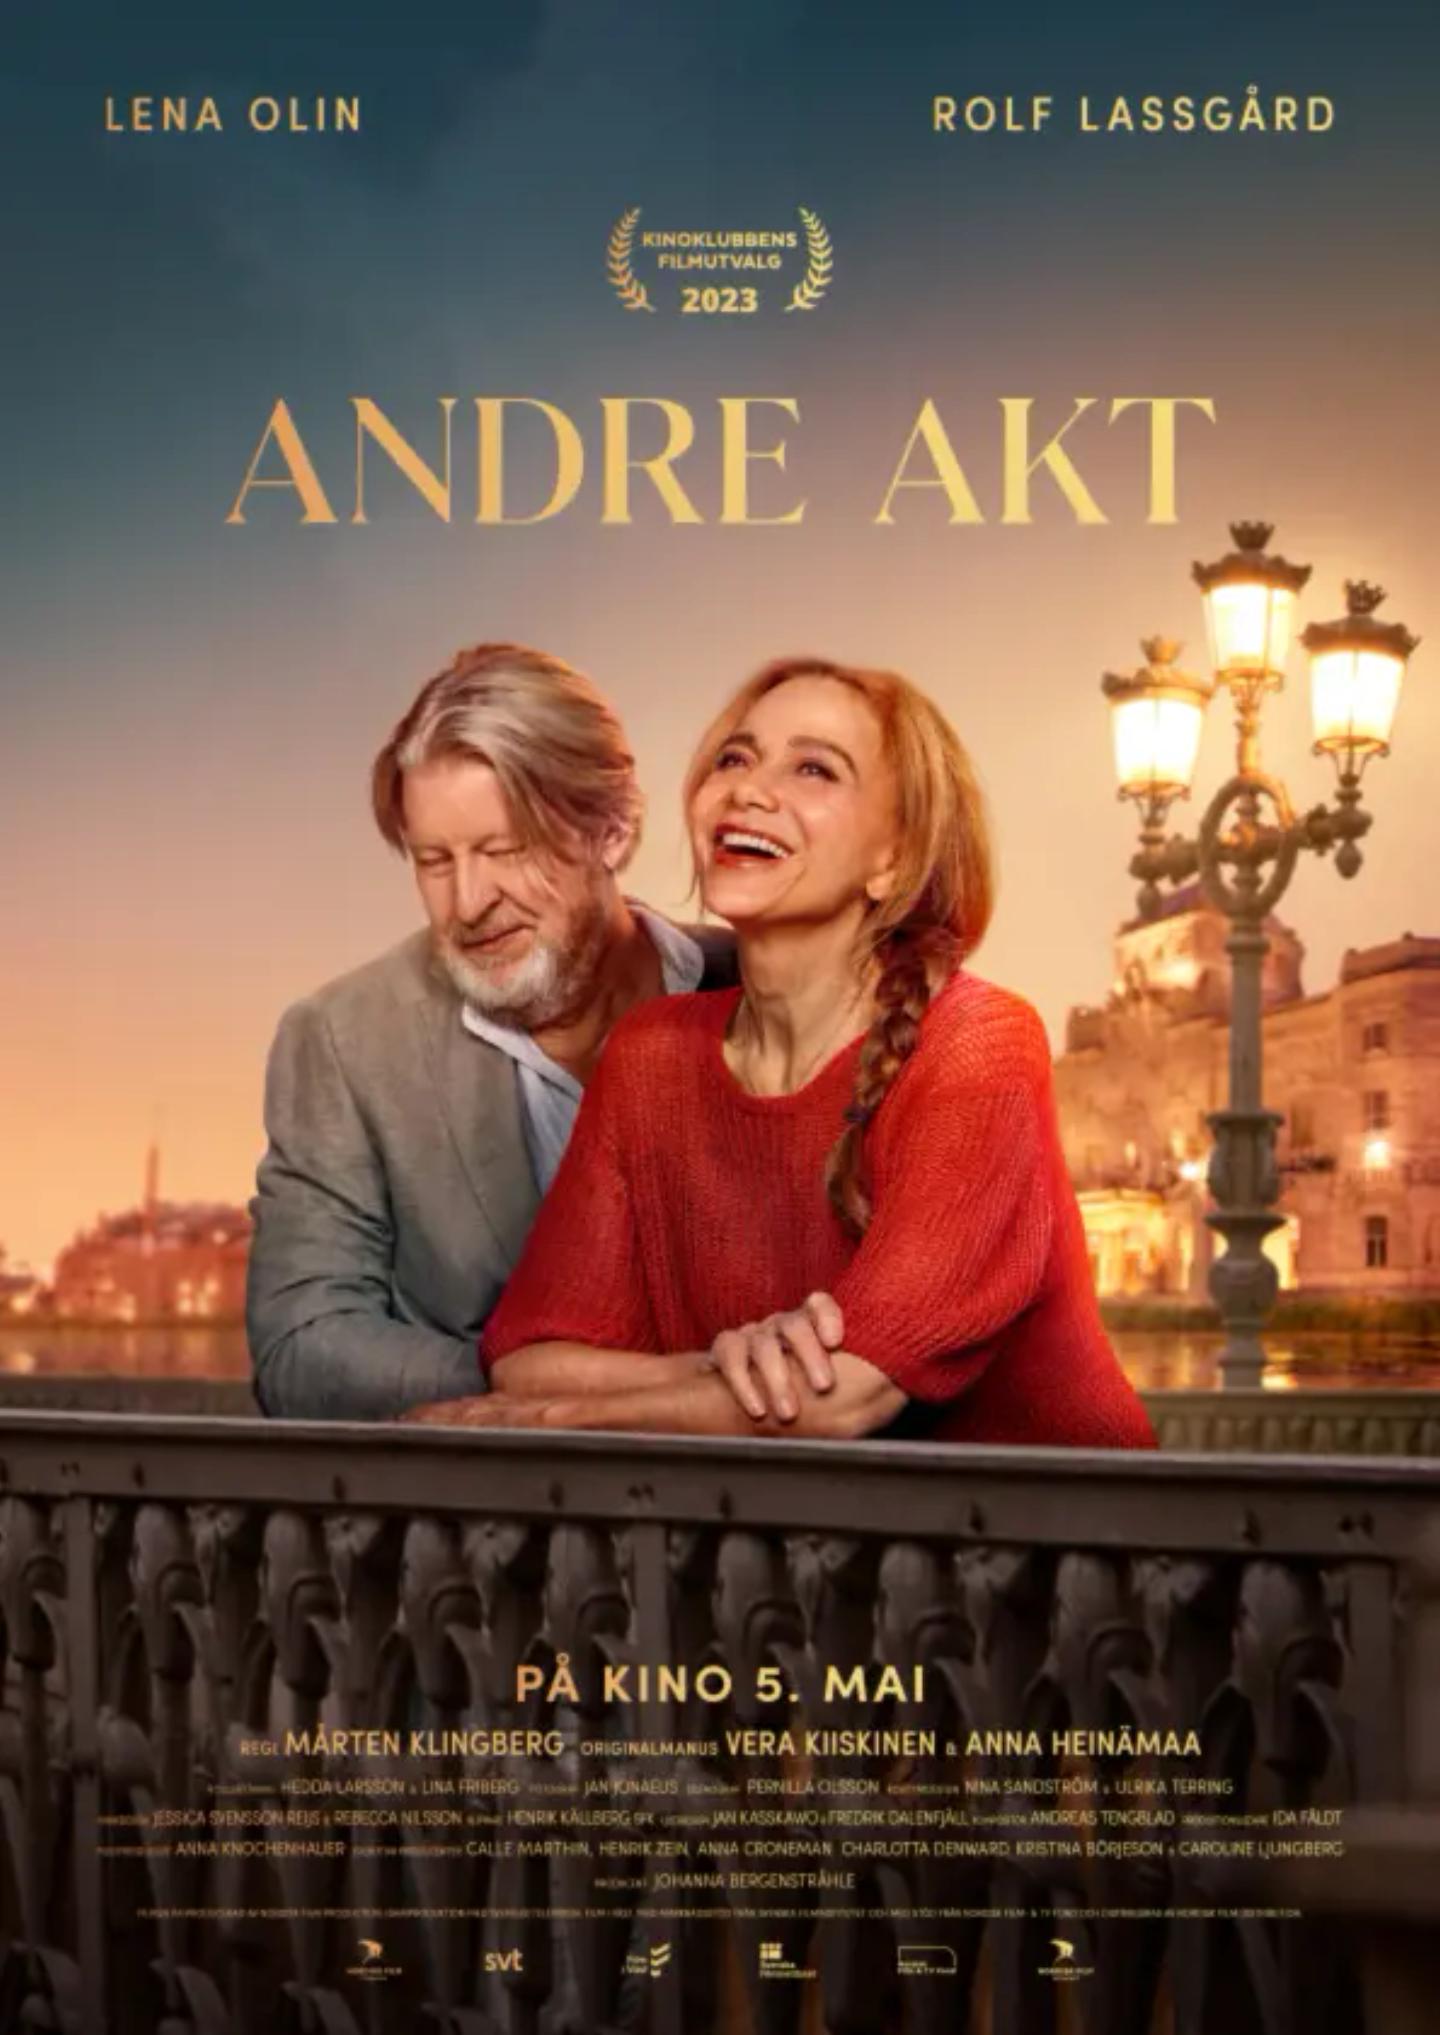 Plakat for 'Andre akt'